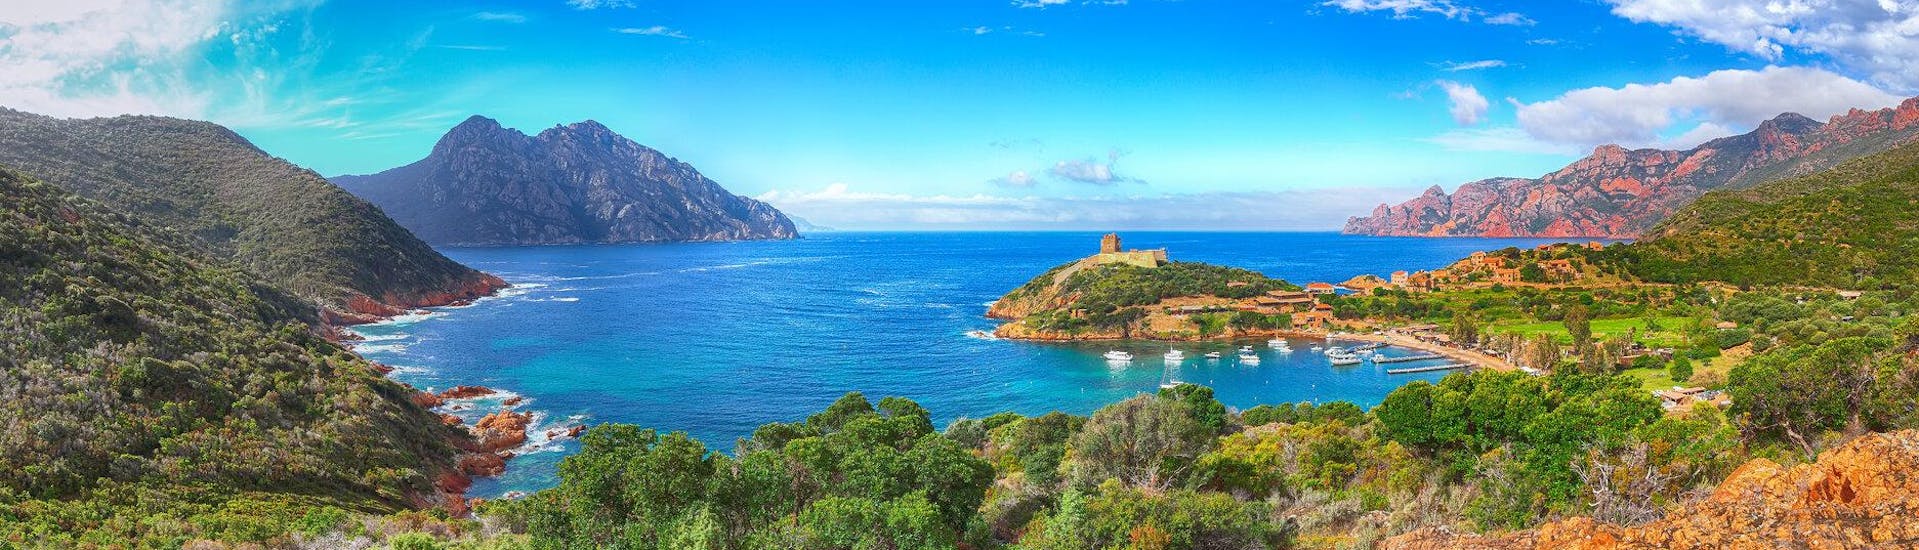 Eine Freundesgruppe macht eine Bootstour in der Urlaubsregion Korsika.